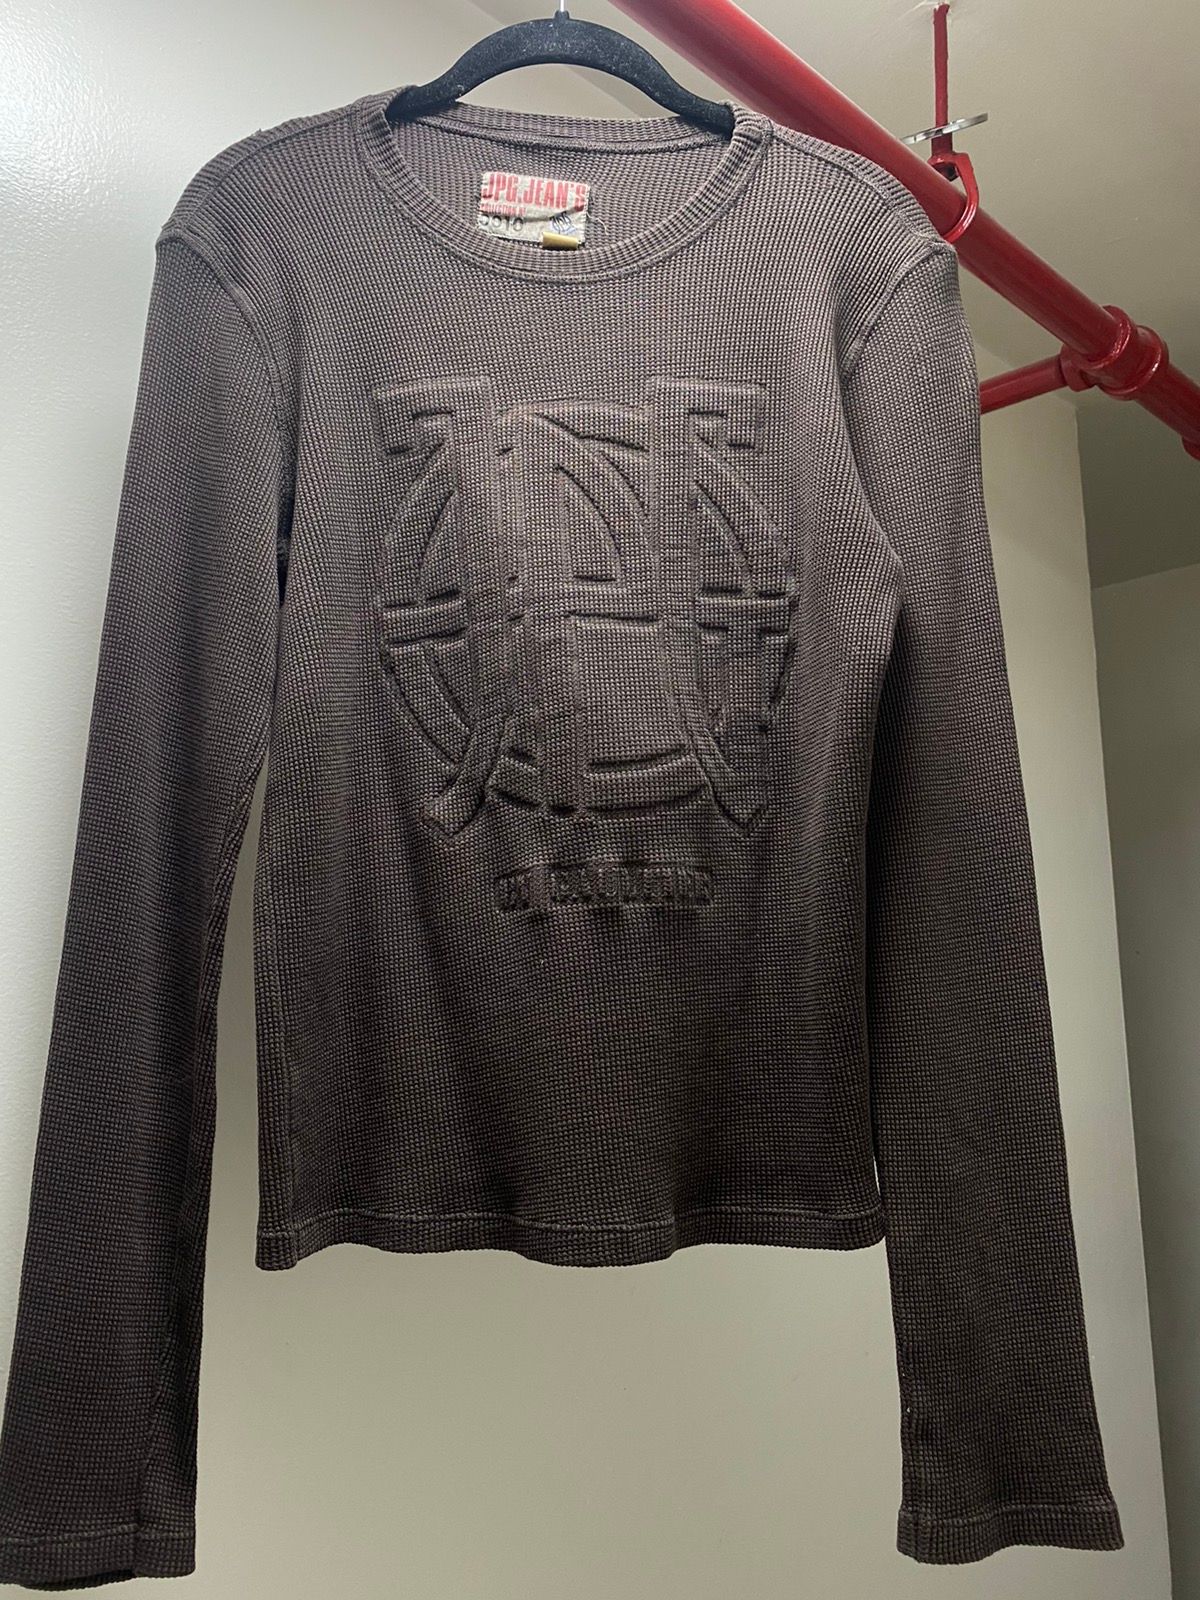 Jean Paul Gaultier JPG Men’s Knit Sweater Size US S / EU 44-46 / 1 - 1 Preview